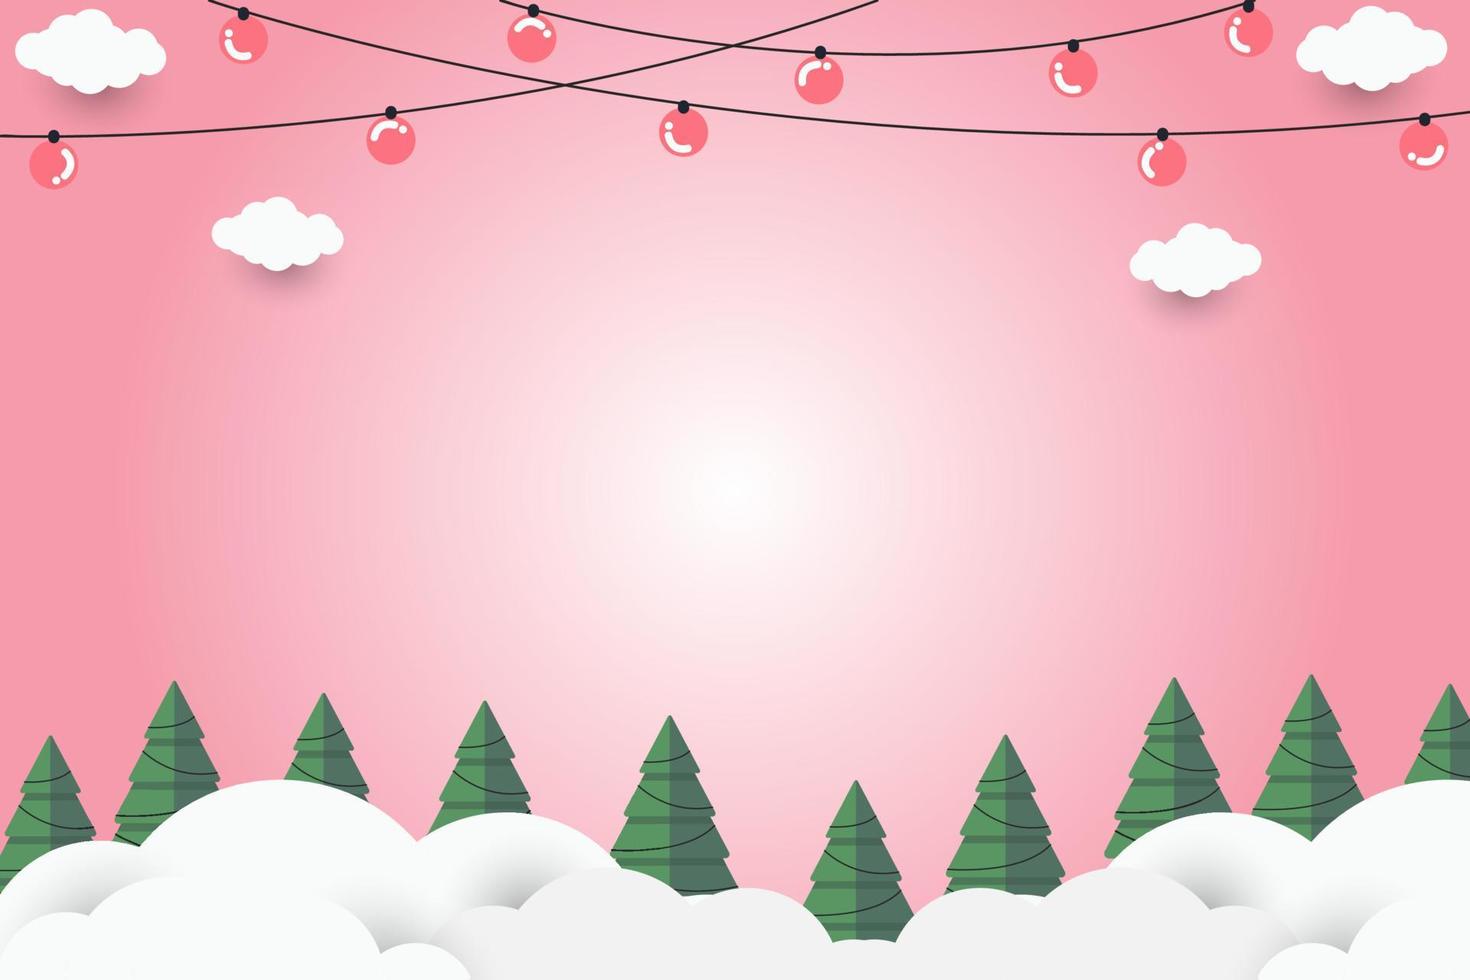 groen Kerstmis boom Aan roze papier kunst abstract achtergrond met lucht en lijn ontwerp voor vrolijk kerstmis, poster kaart, spandoeken, geschenk kaart, Kerstmis concept. vector illustratie. papier besnoeiing stijl.